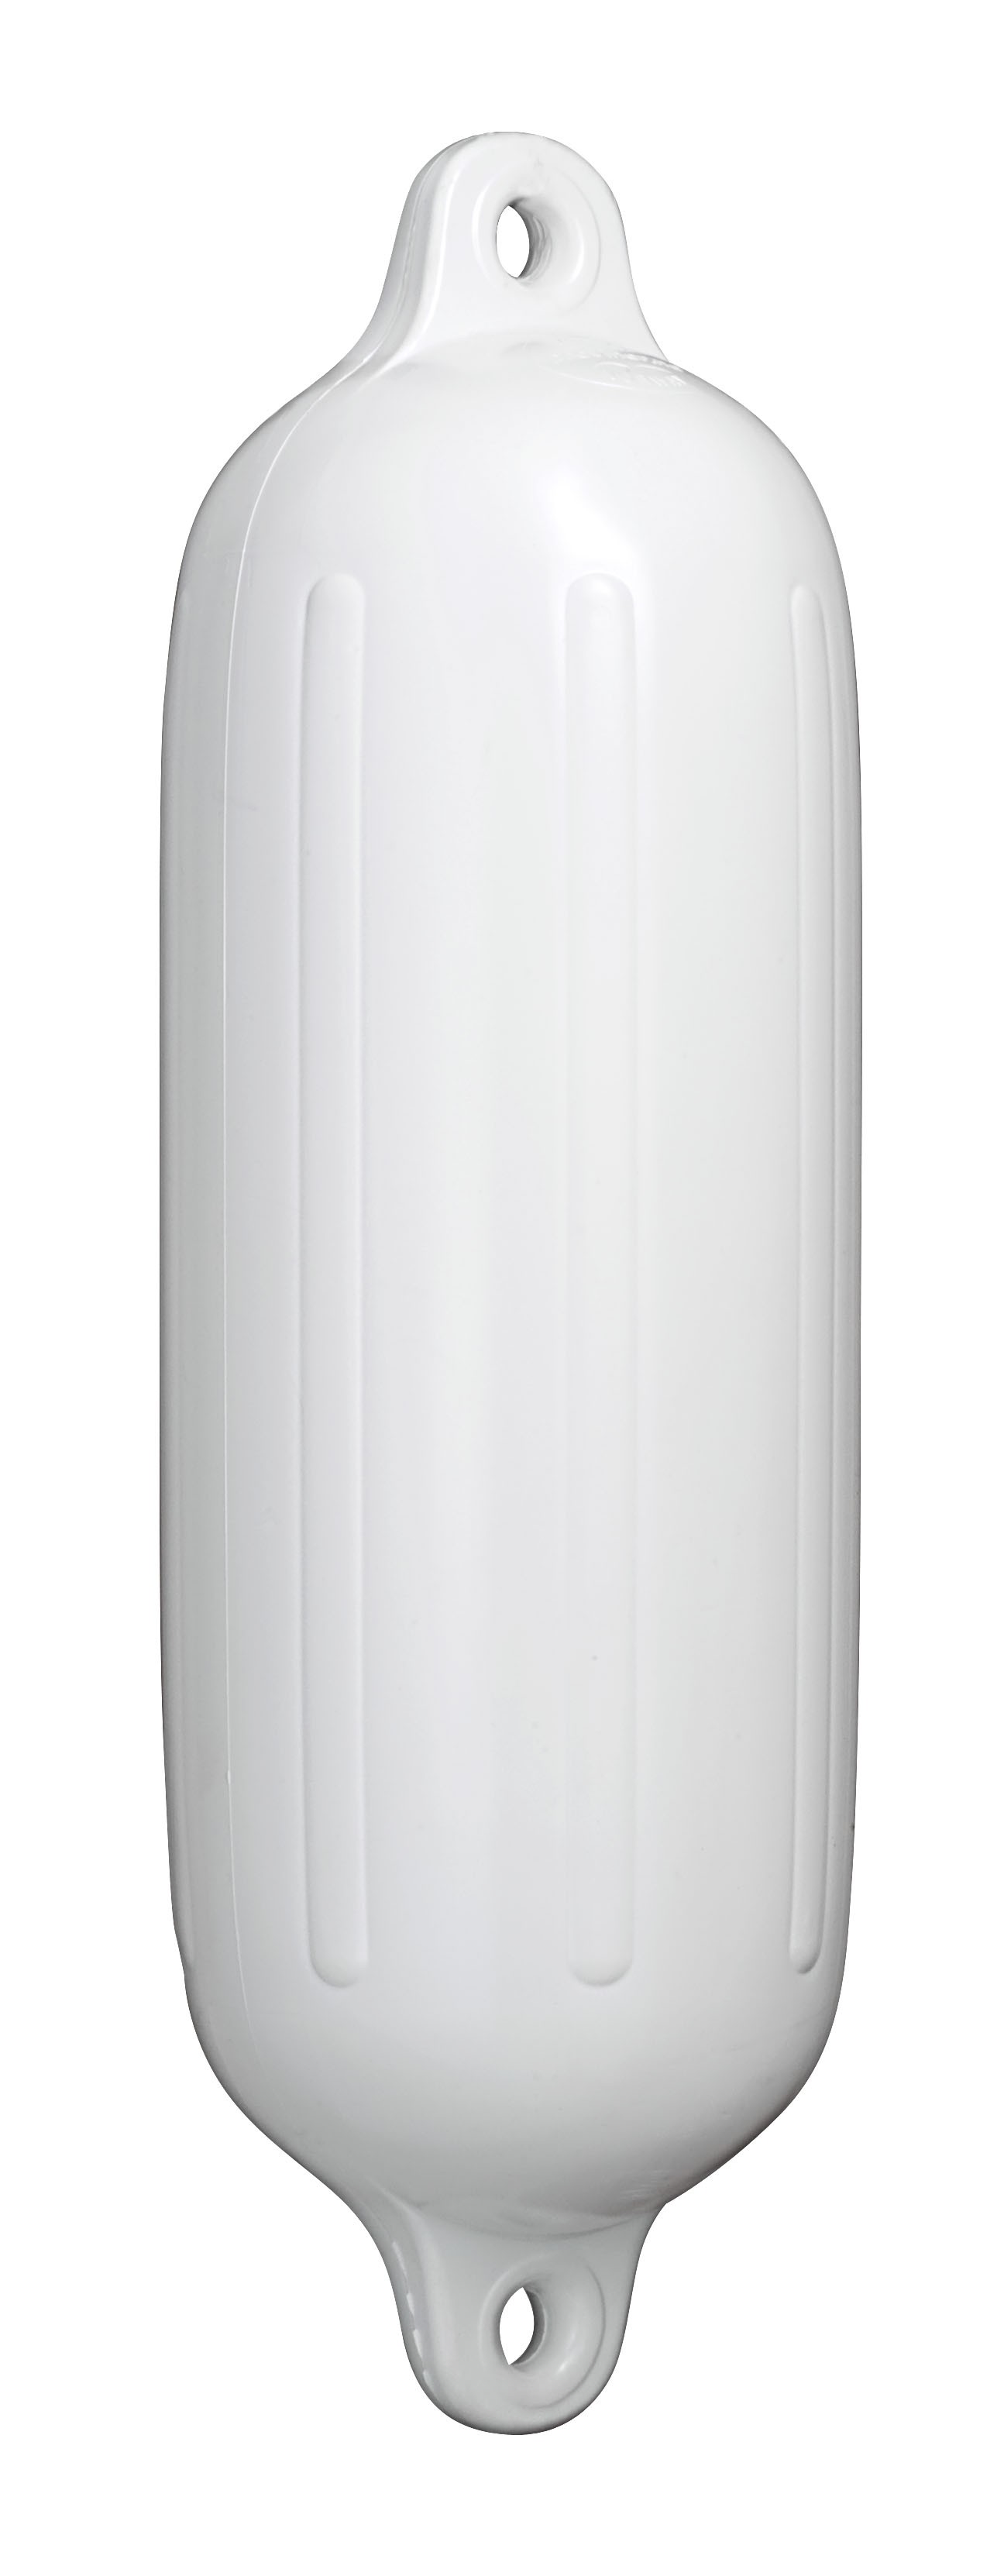 29.19 - Μπαλόνι POLYFORM Με Διπλό Μάτι Σειρά G Χρώματος Λευκού 17x58.5cm